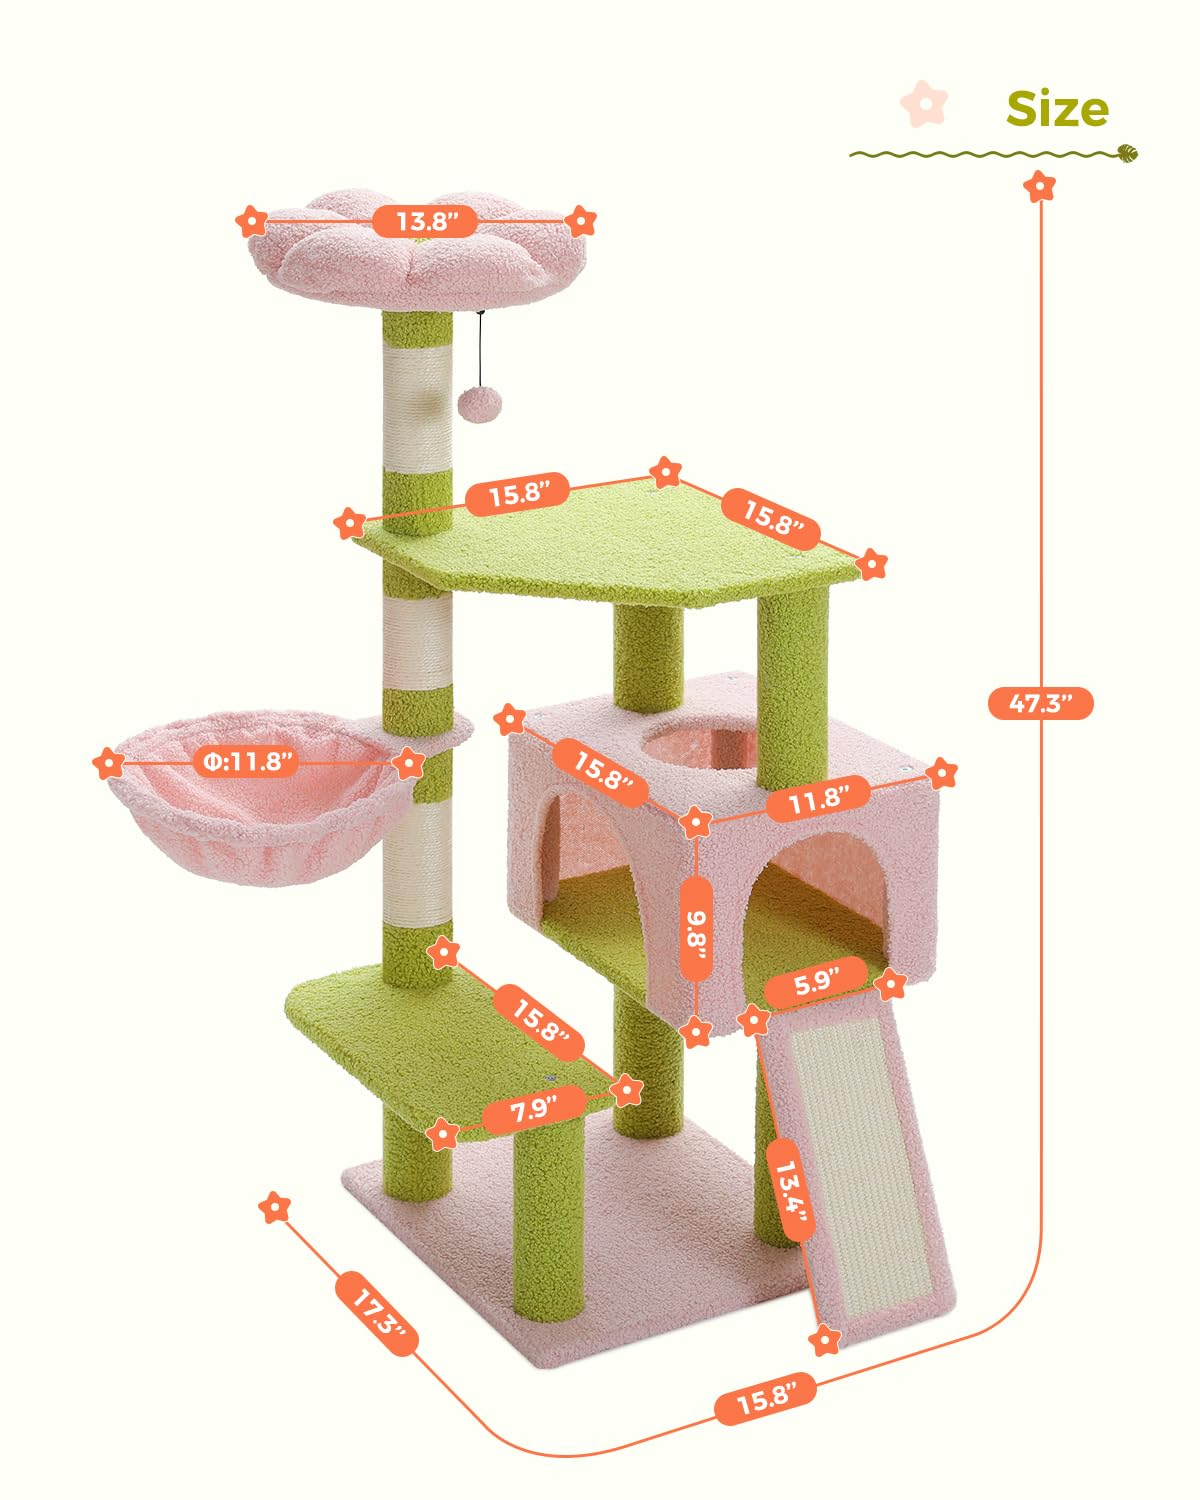 Cat Multi-Level 47.2" Sisal Flower Tower